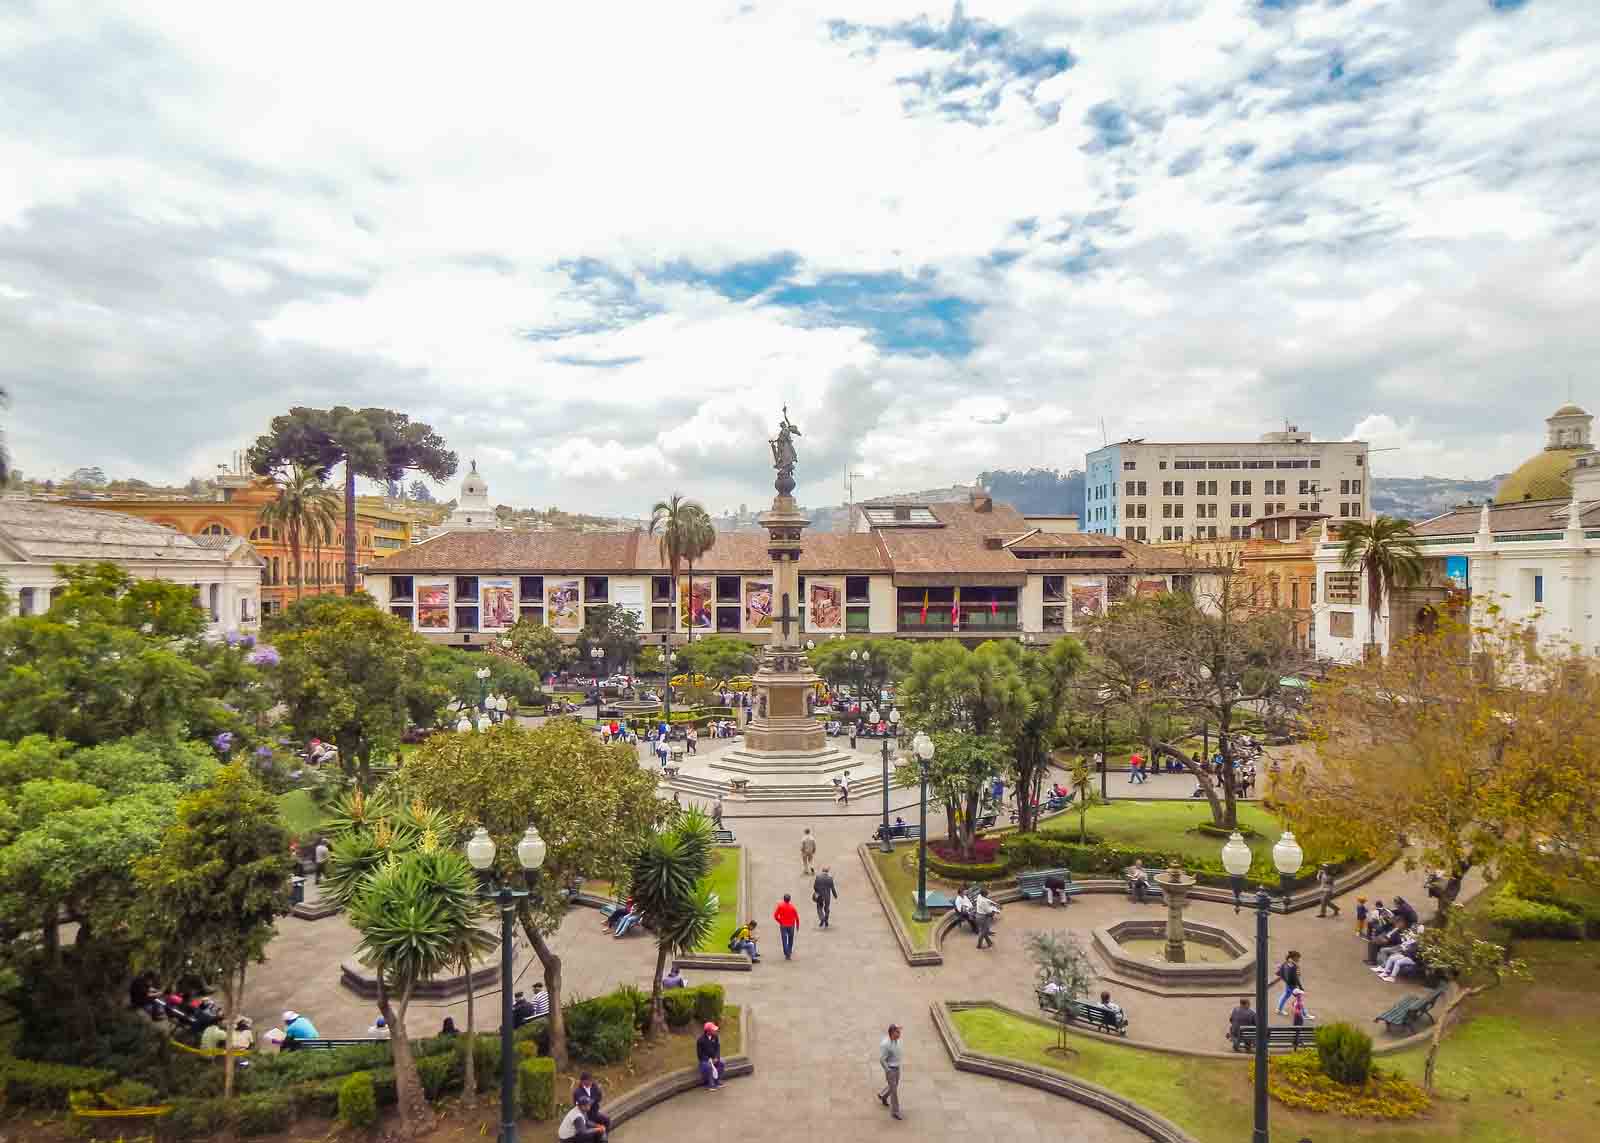  Ecuador | Five of Quito's emblematic World Heritage Sites